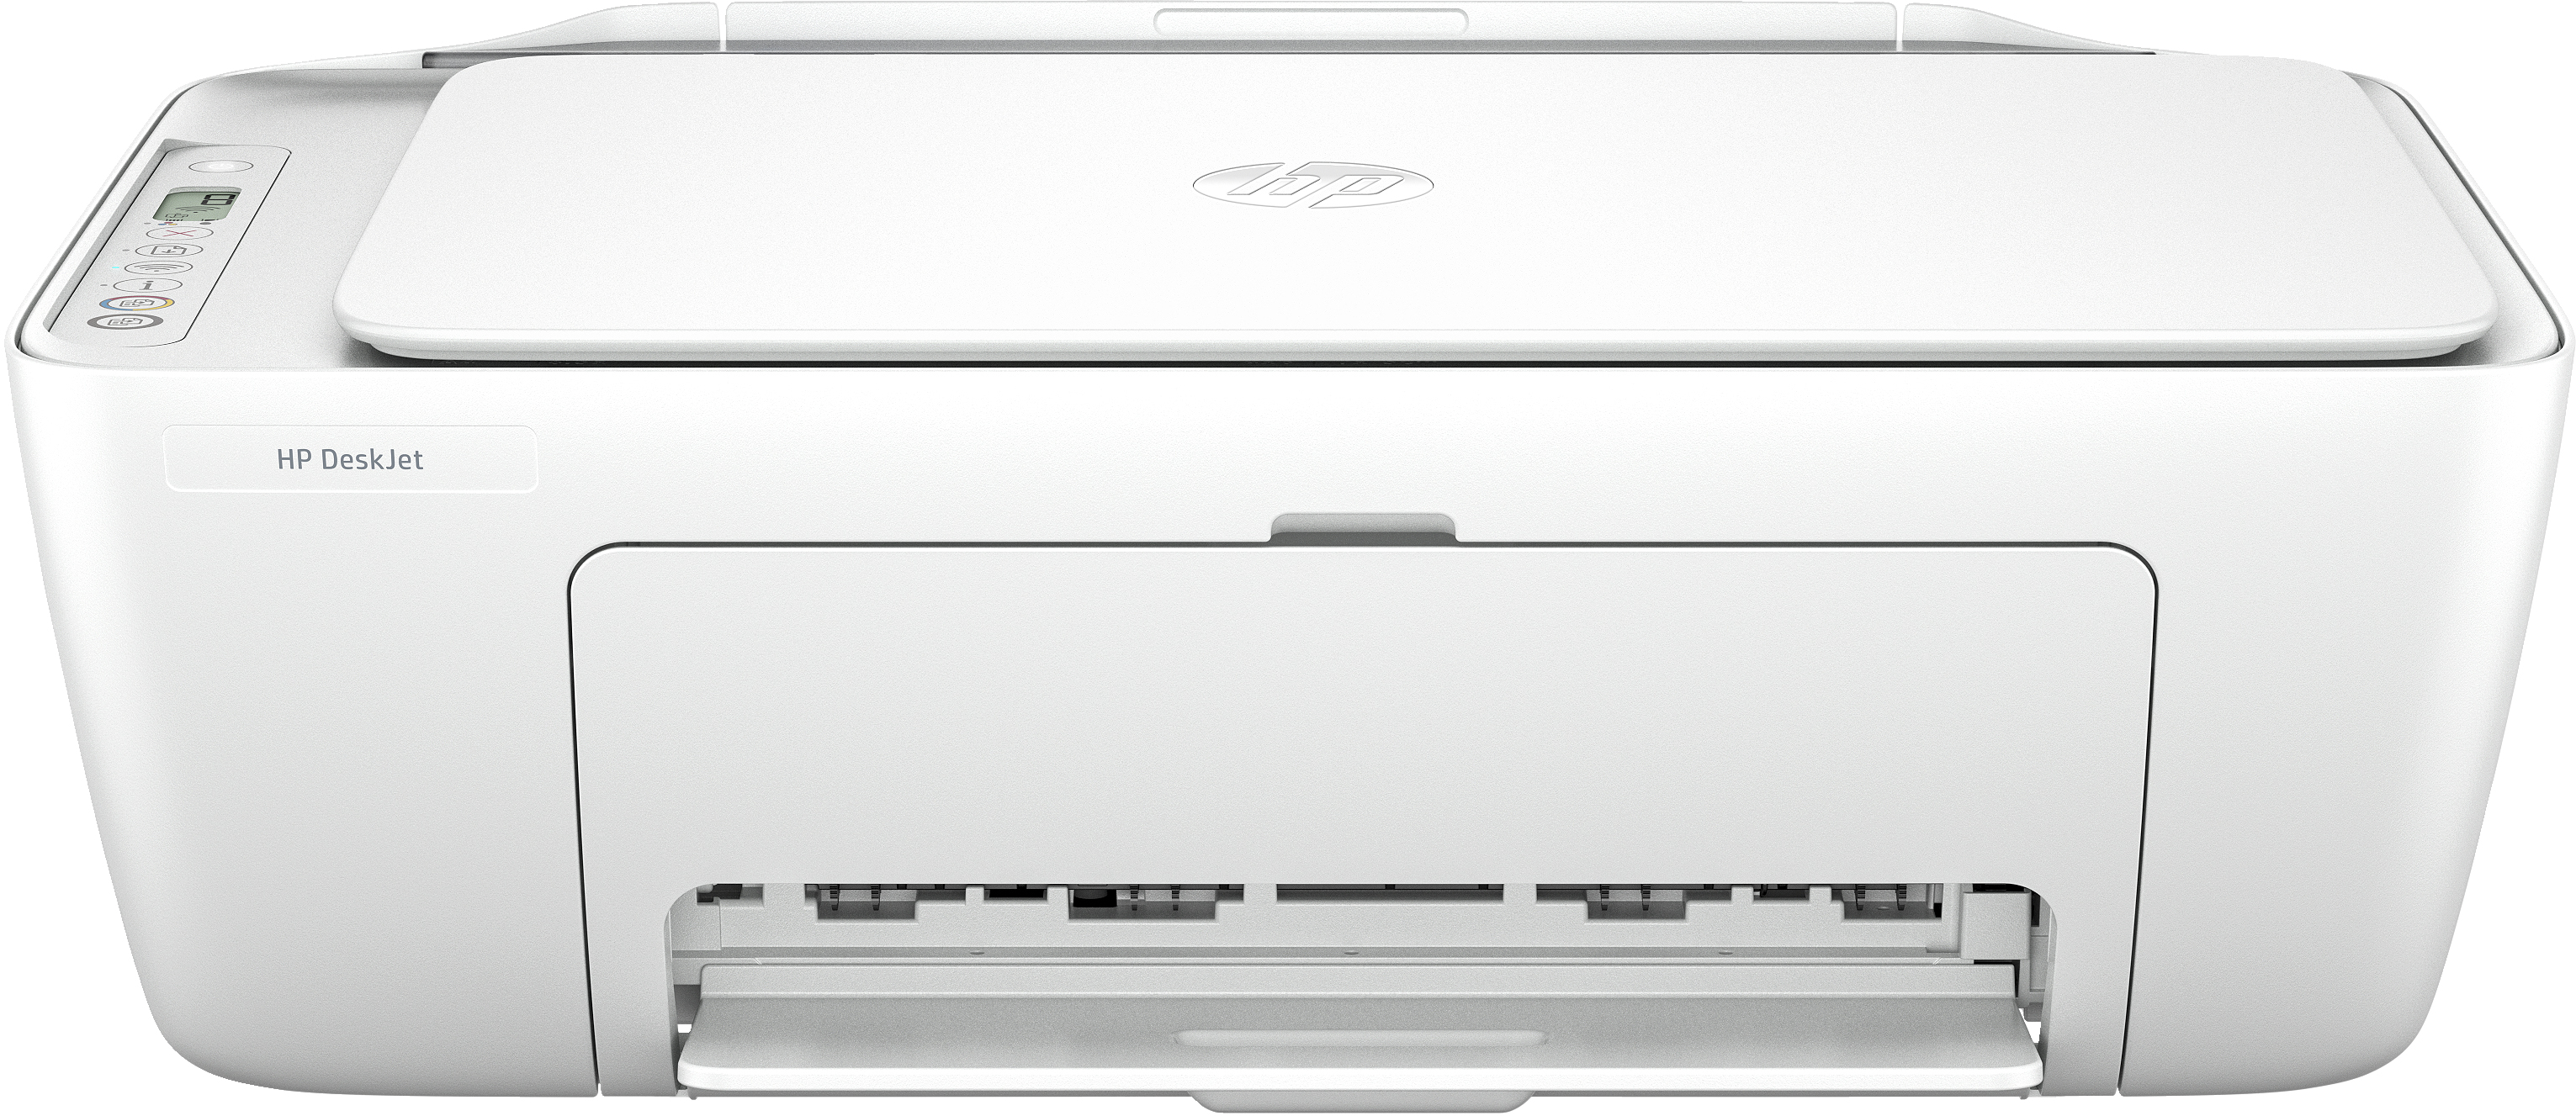 Image of HP DeskJet Stampante multifunzione 2810e, Colore, Stampante per Casa, Stampa, copia, scansione, scansione verso PDF